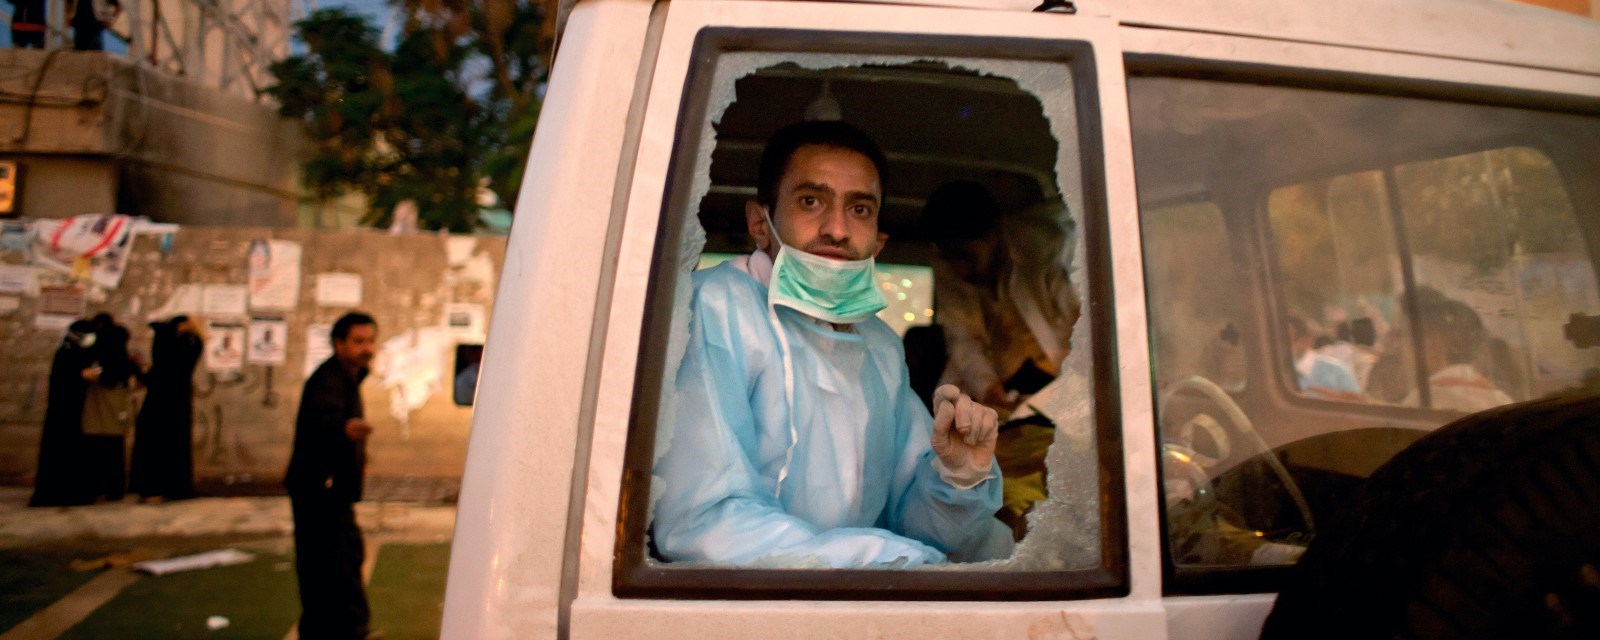 En lege sitter i en bil og kikker ut av et knust vindu.